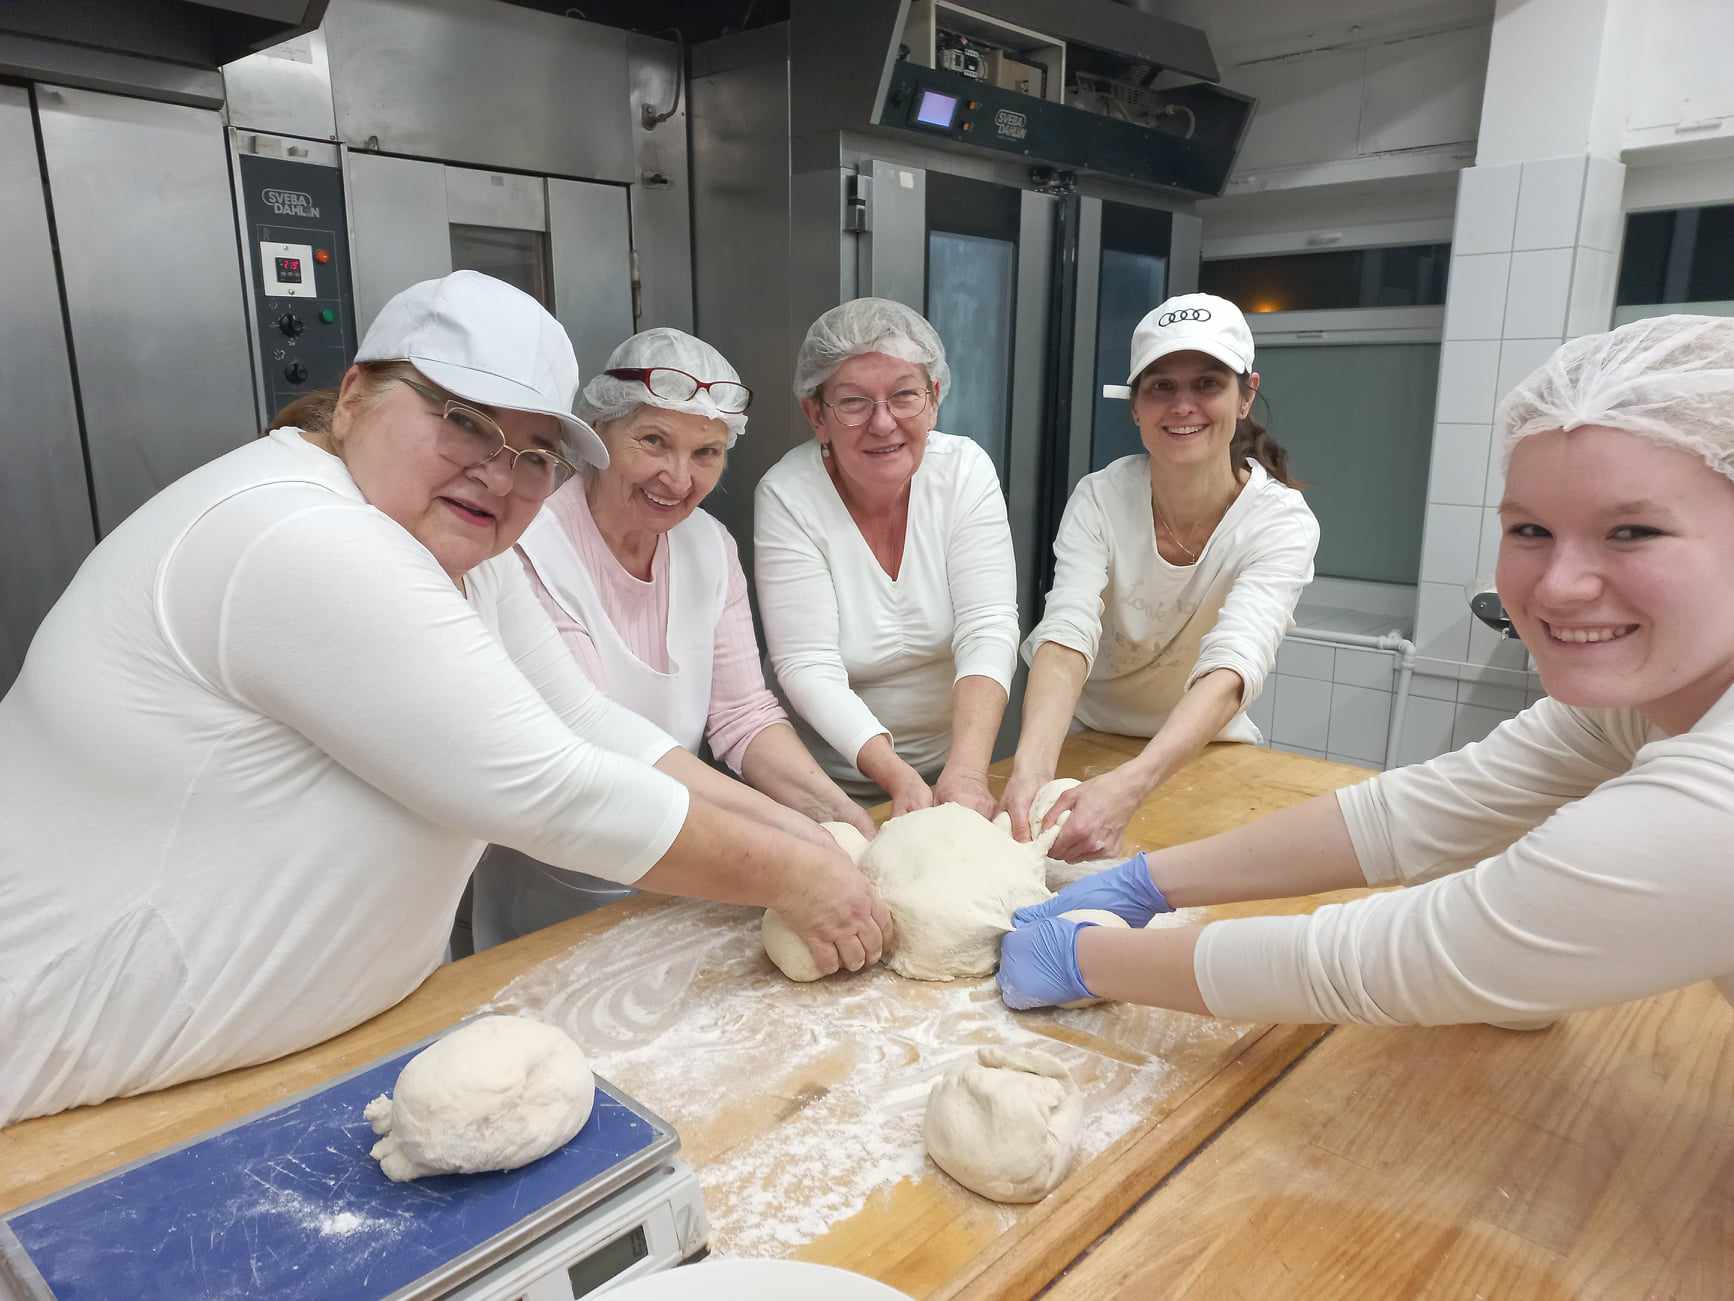 Egy ötfős nőből álló csoport, akik mindegyike fehér inget és hajtakarót visel, mosolyogva dolgoznak együtt, hogy tésztát gyúrjanak egy nagy faasztalon egy pékség konyhájában. A konyha tele van sütőberendezéssel és sütővel a háttérben.